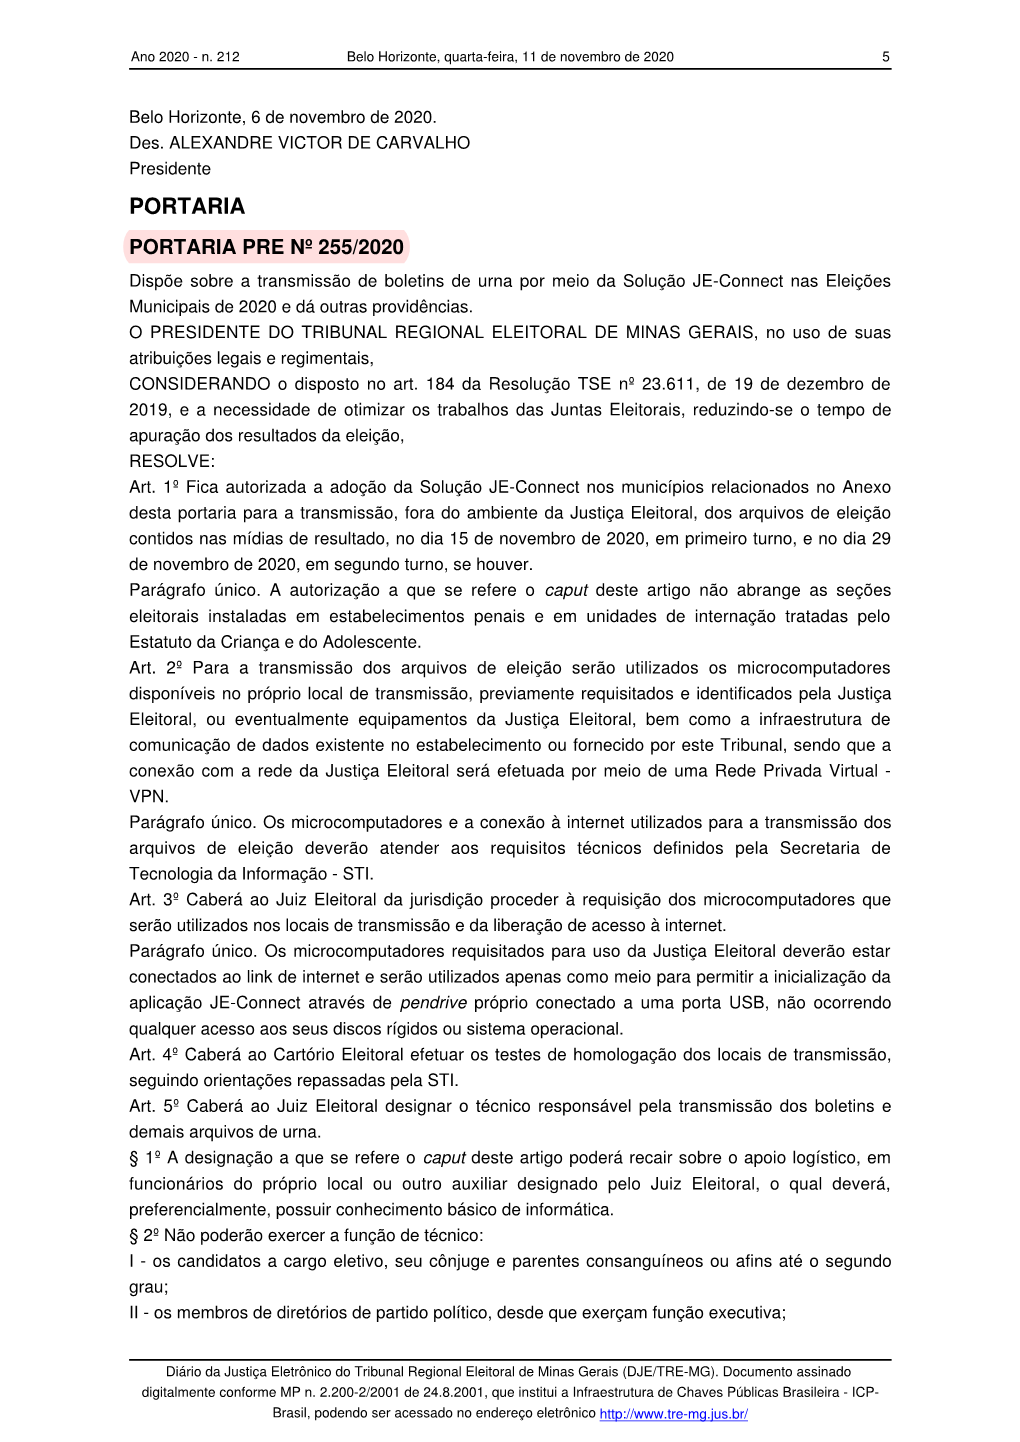 Diário Da Justiça Eletrônico Do Tribunal Regional Eleitoral De Minas Gerais (DJE/TRE-MG)